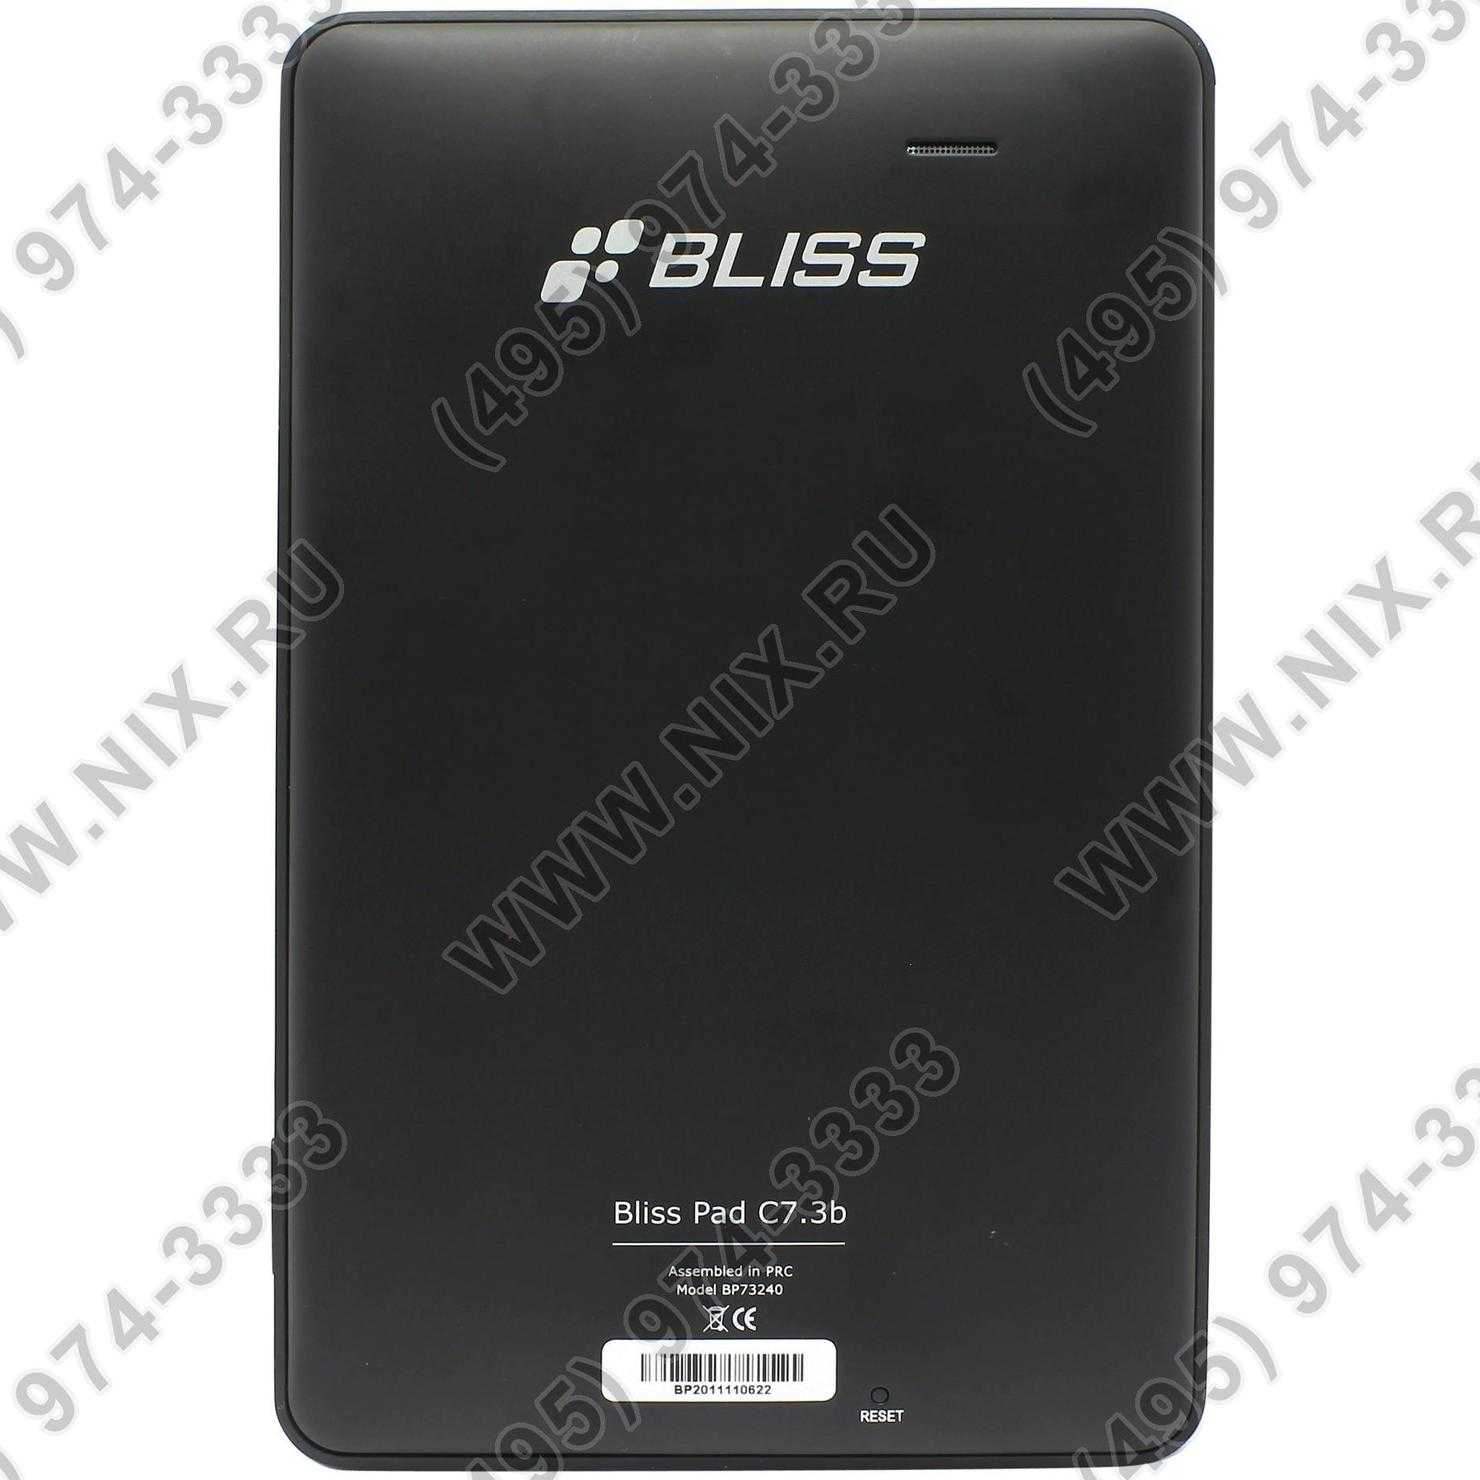 Bliss pad r8010 - купить , скидки, цена, отзывы, обзор, характеристики - планшеты